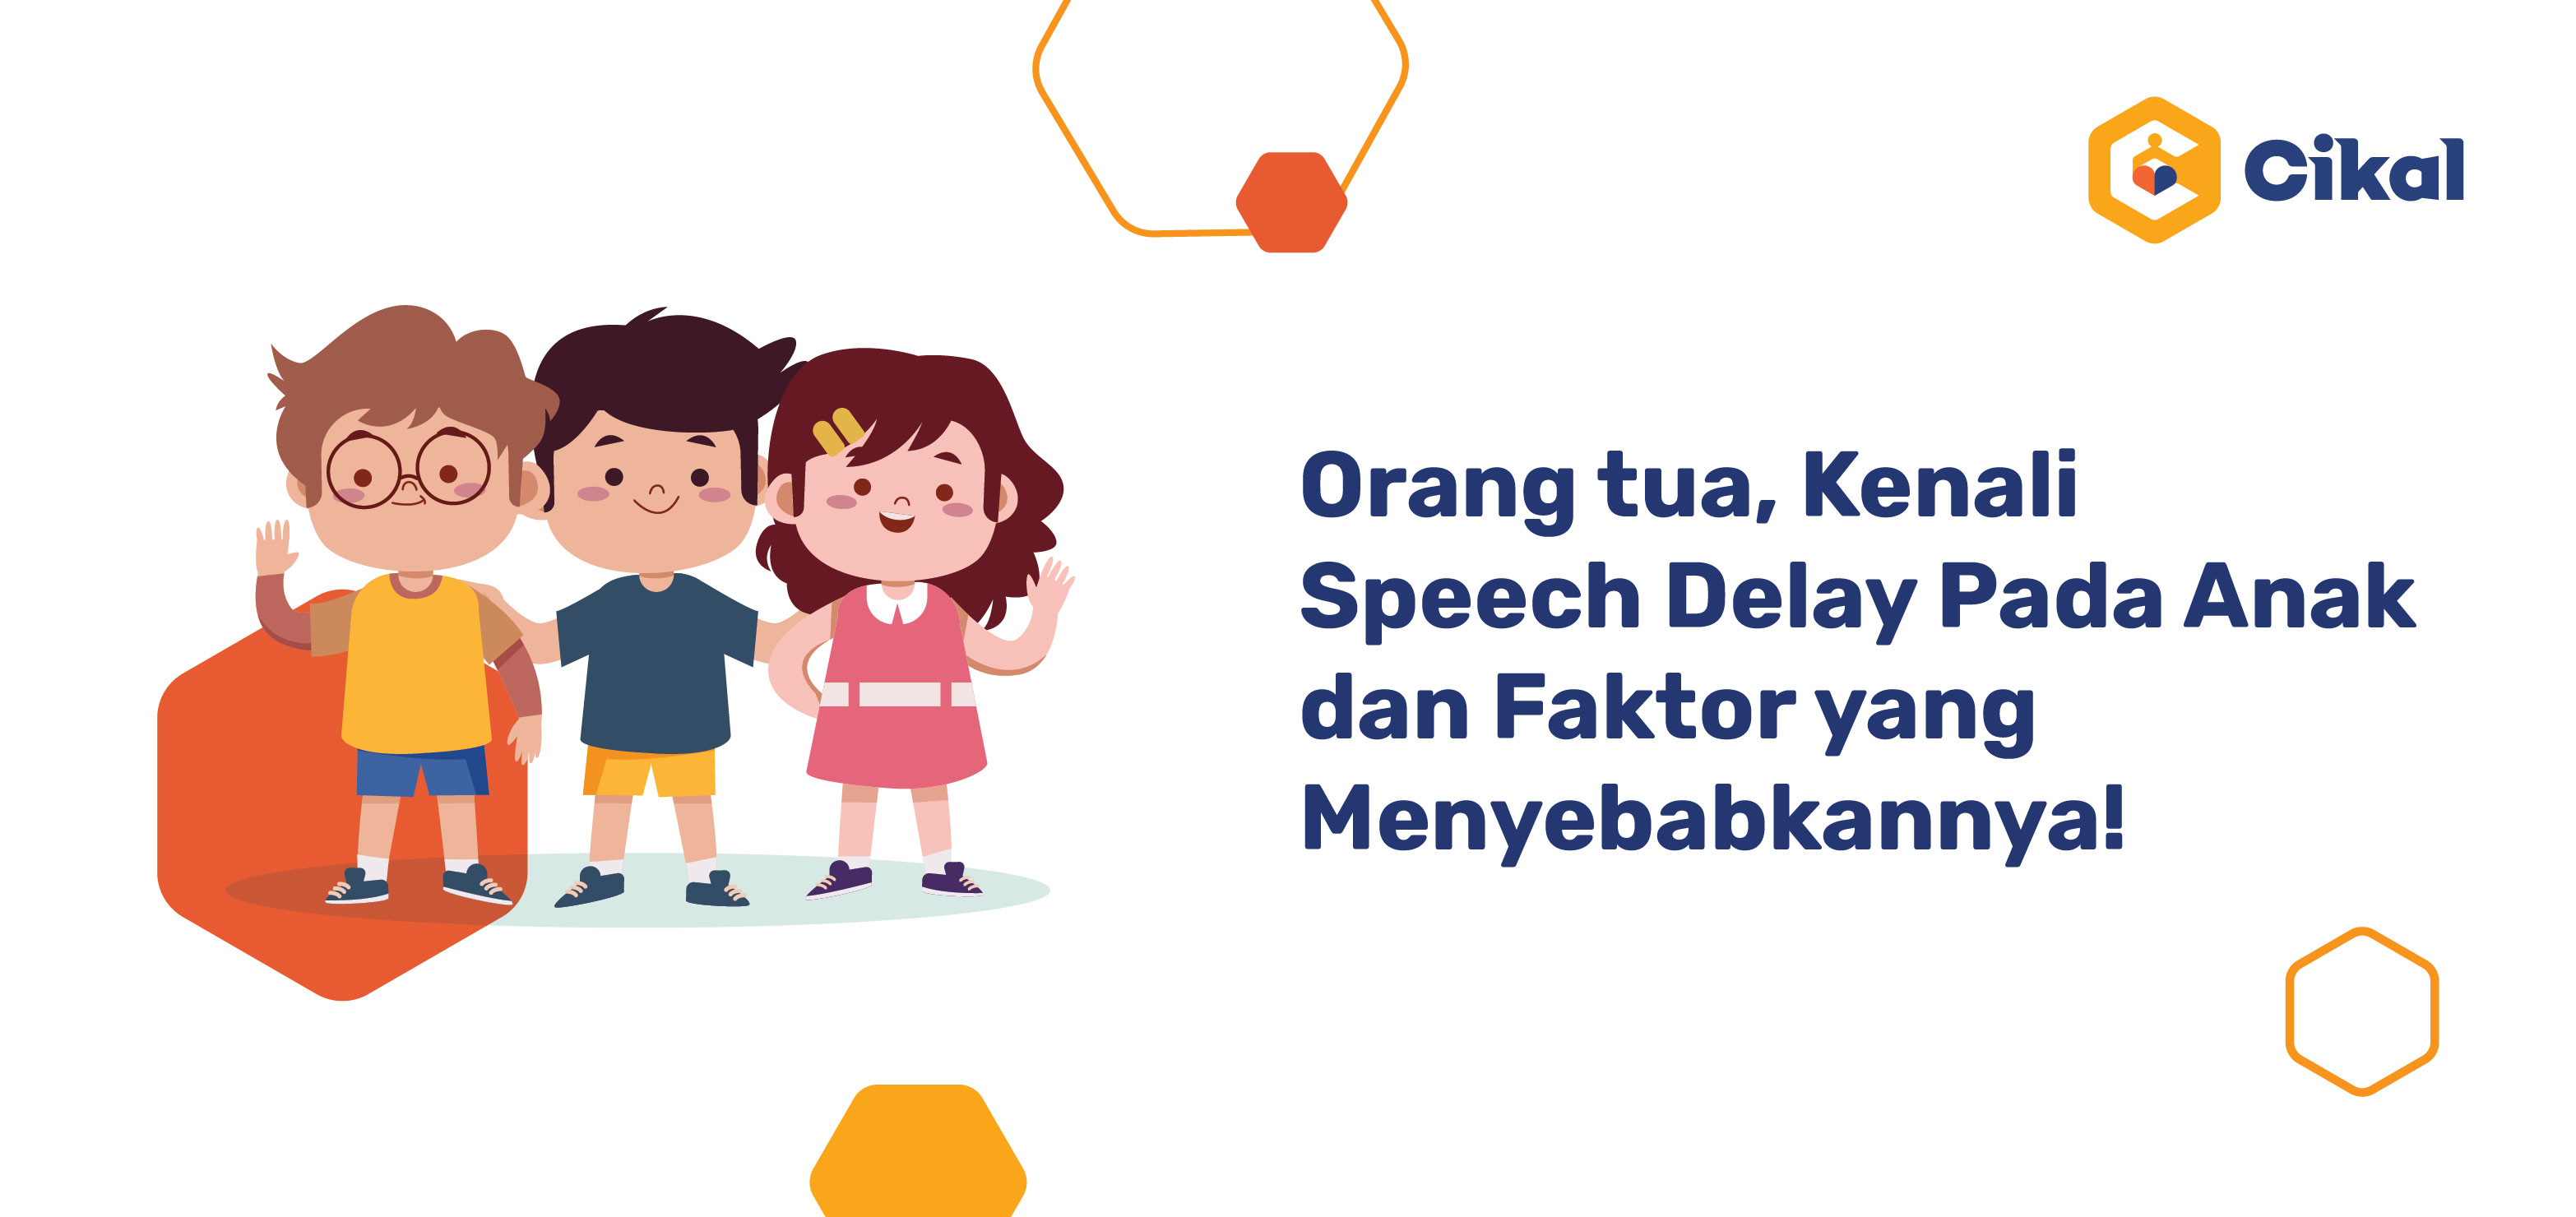 Orang tua, Kenali Speech Delay Pada Anak dan Faktor Penyebabnya!